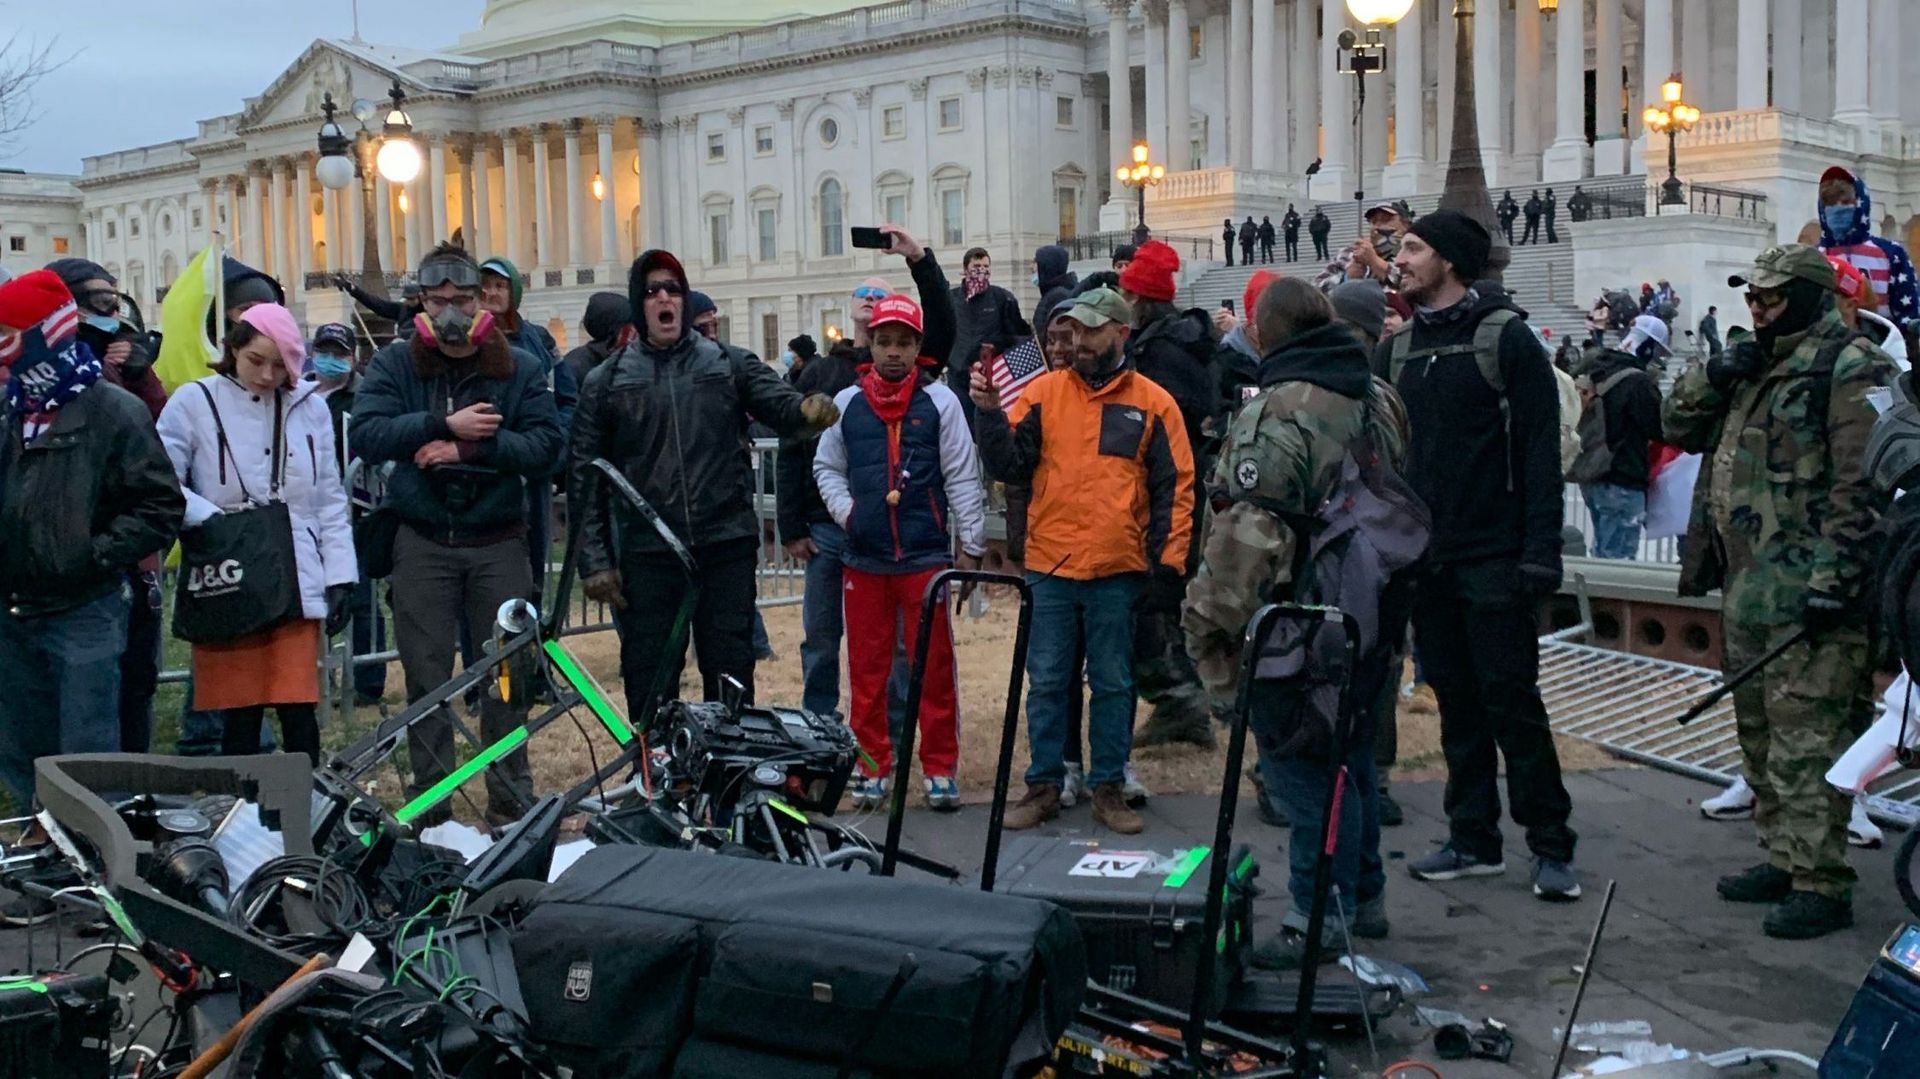 Des personnes se tiennent autour de l'équipement d'Associated Press détruit par les partisans de Trump devant le Capitole américain à Washington DC le 6 janvier 2021.